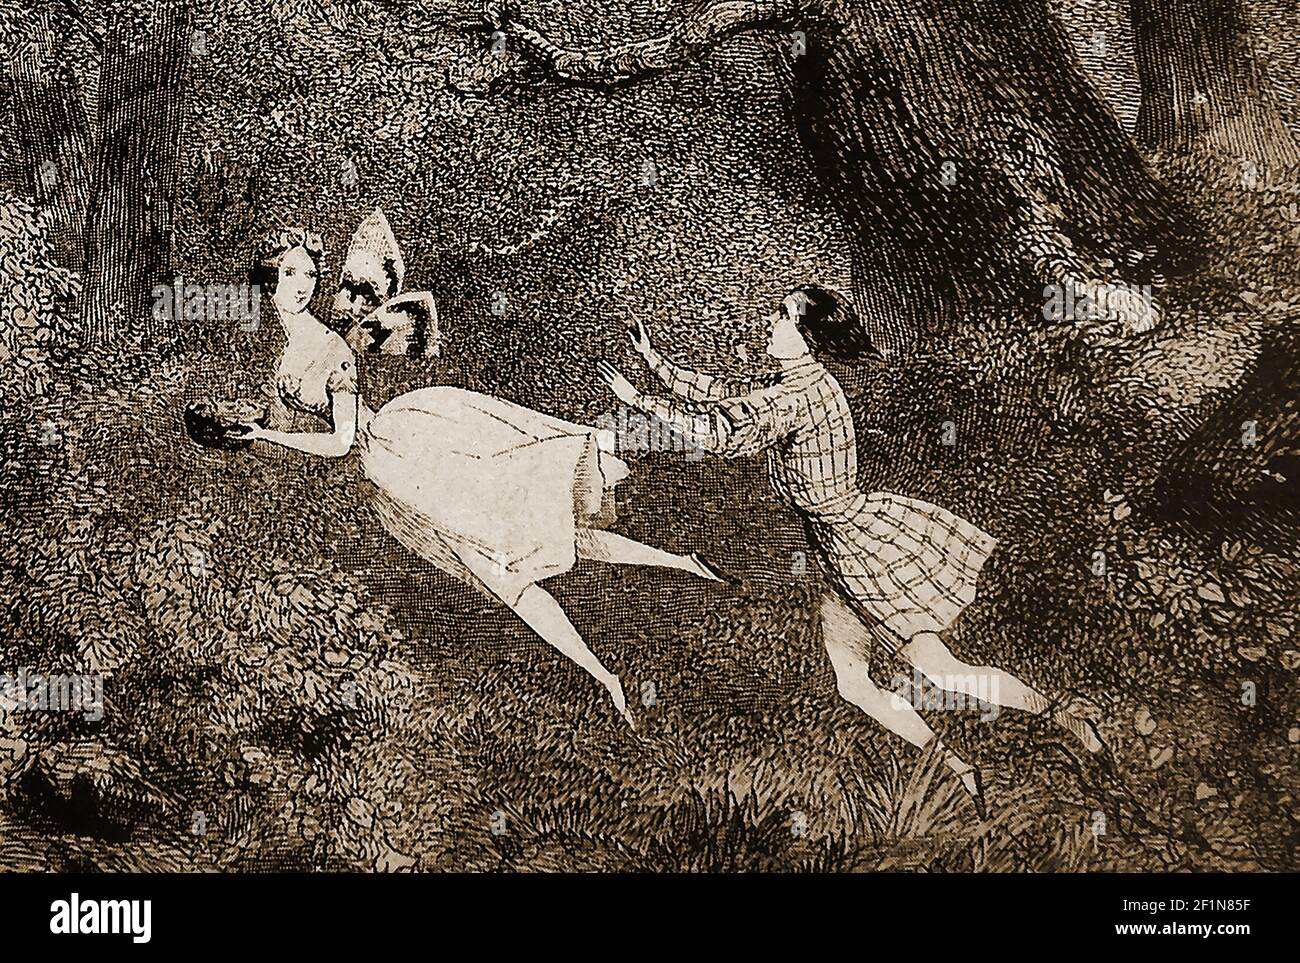 BALLET- une gravure du XIXe siècle montrant une scène de LA SYLPHIDE Act II ---- la Sylphide, également connue en danois sous le nom de Sylfiden, est un ballet romantique en deux actes. Deux versions sont connues l'original chorégraphié par Filippo Taglioni en 1832, et une autre chorégraphié par August Bournonville en 1836. Bourronville's (l'un des plus anciens ballets survivants du monde) est la seule version connue pour avoir survécu . La Sylphide a été le premier ballet connu où la danse en pointe a été utilisée à des fins artistiques (plutôt que comme une démonstration acrobatique). Banque D'Images